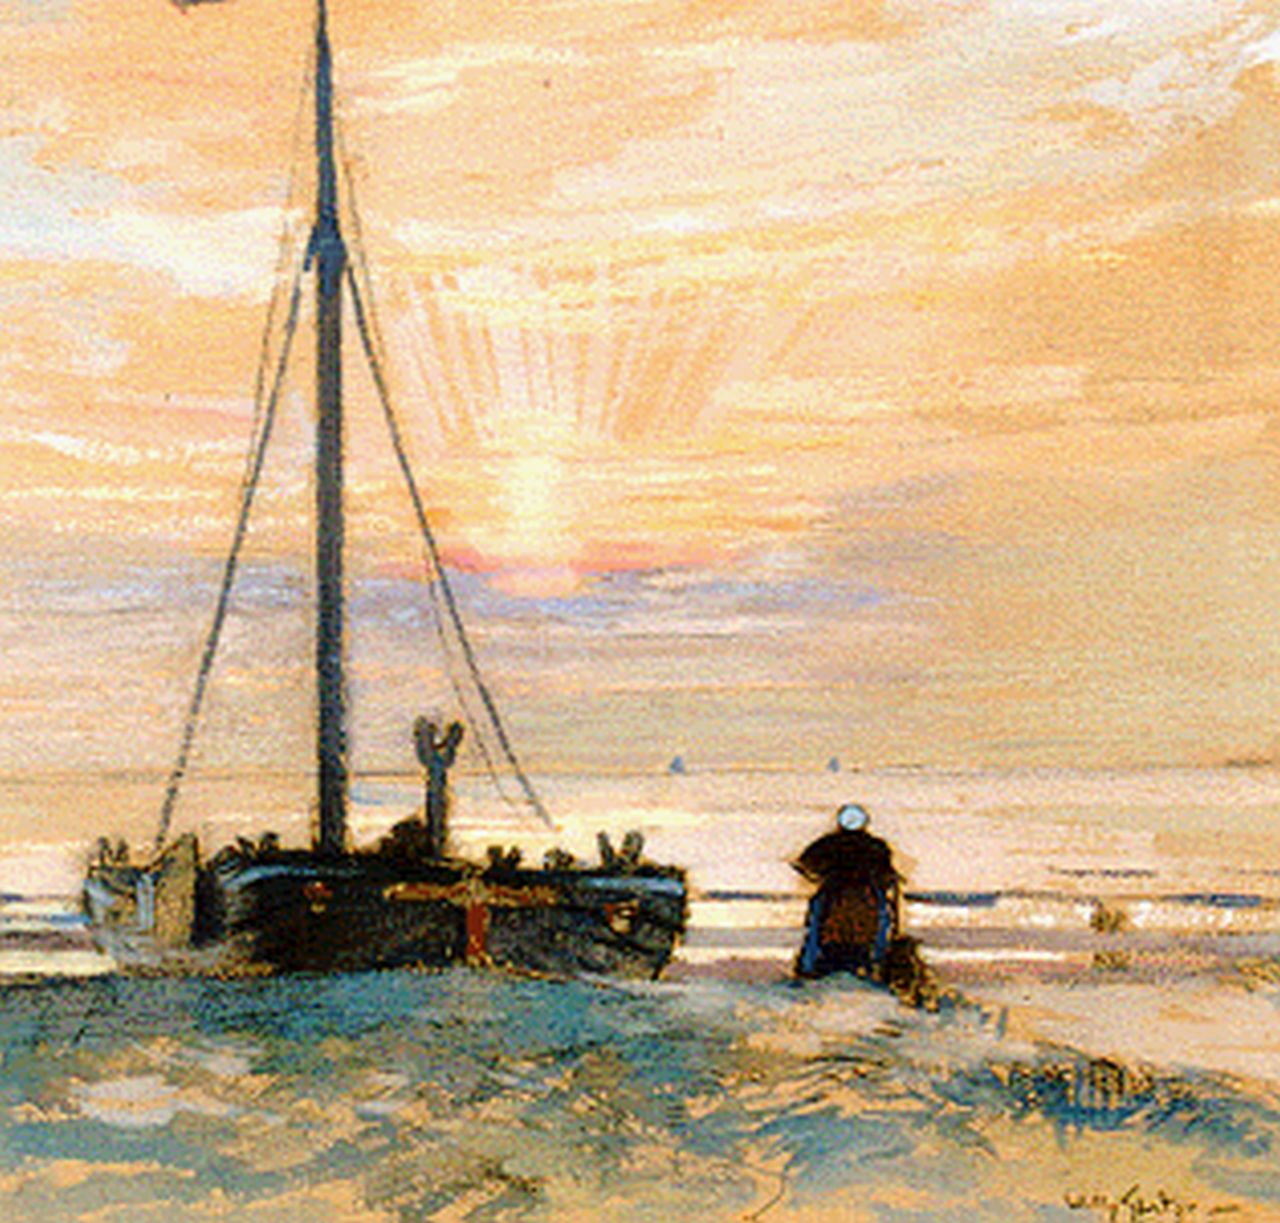 Sluiter J.W.  | Jan Willem 'Willy' Sluiter, Bom op het strand, zwart krijt en aquarel op papier 29,5 x 37,0 cm, gesigneerd rechtsonder